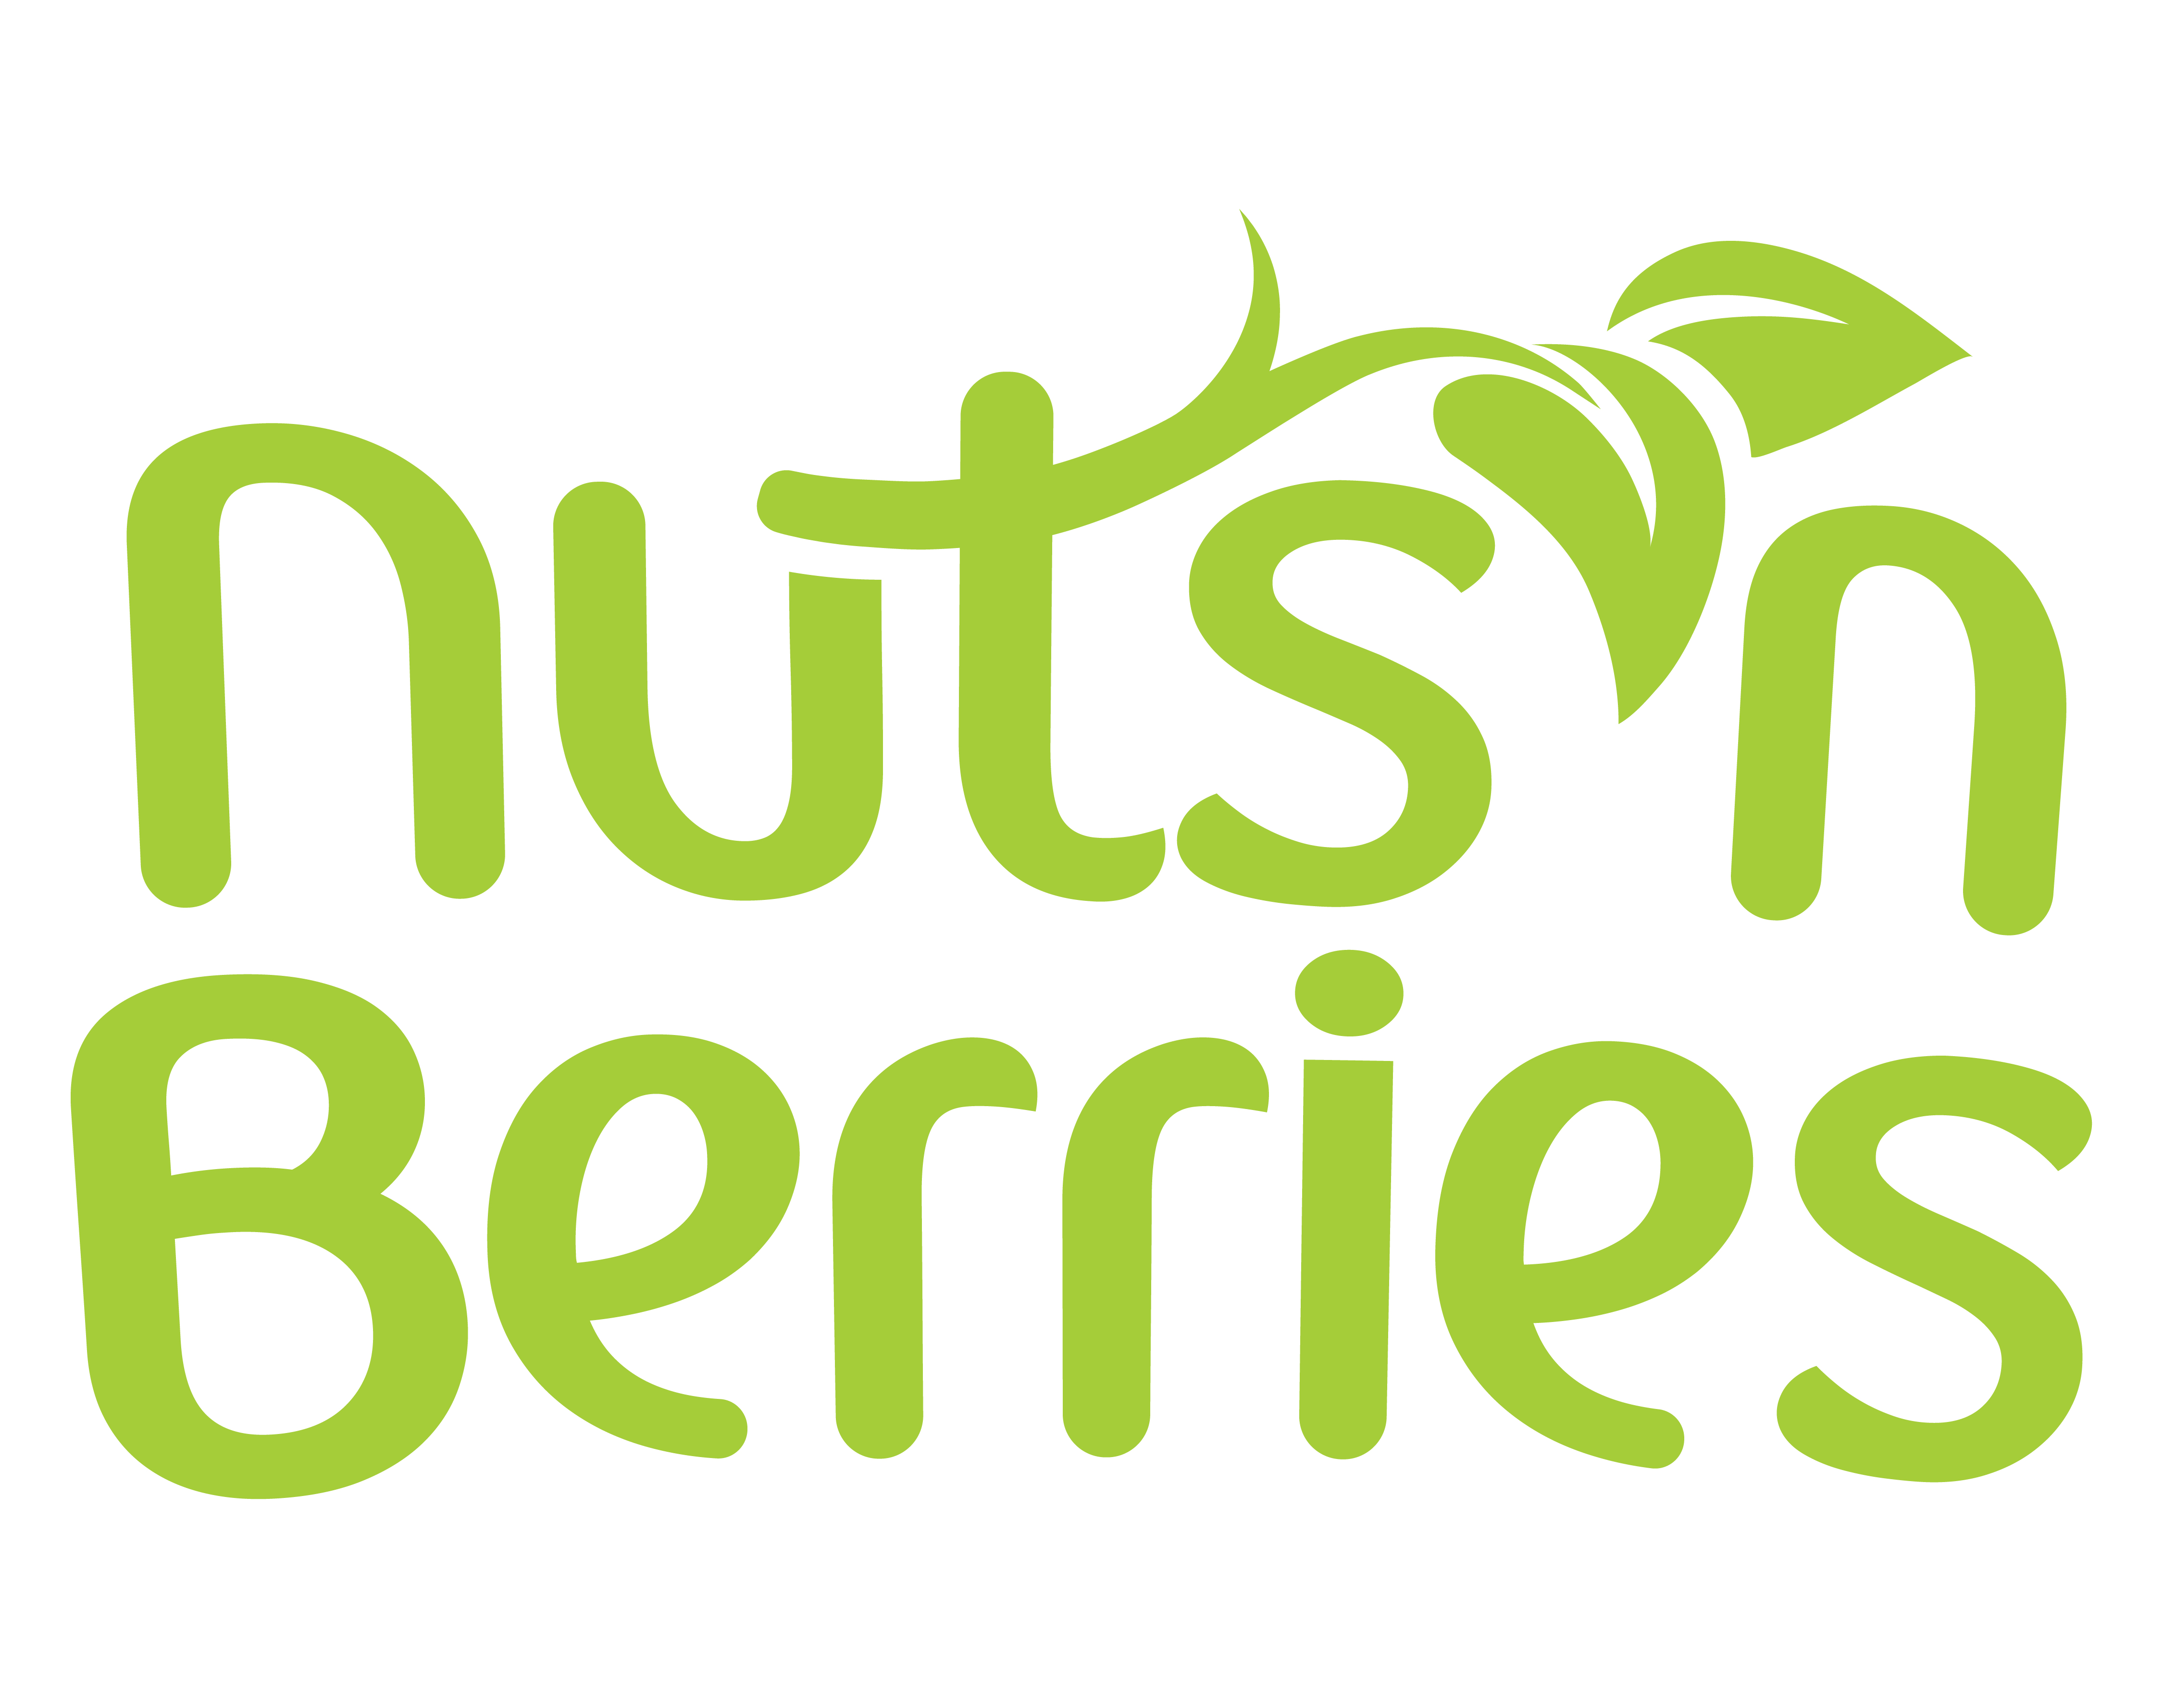 Nuts 'n Berries Healthy Market